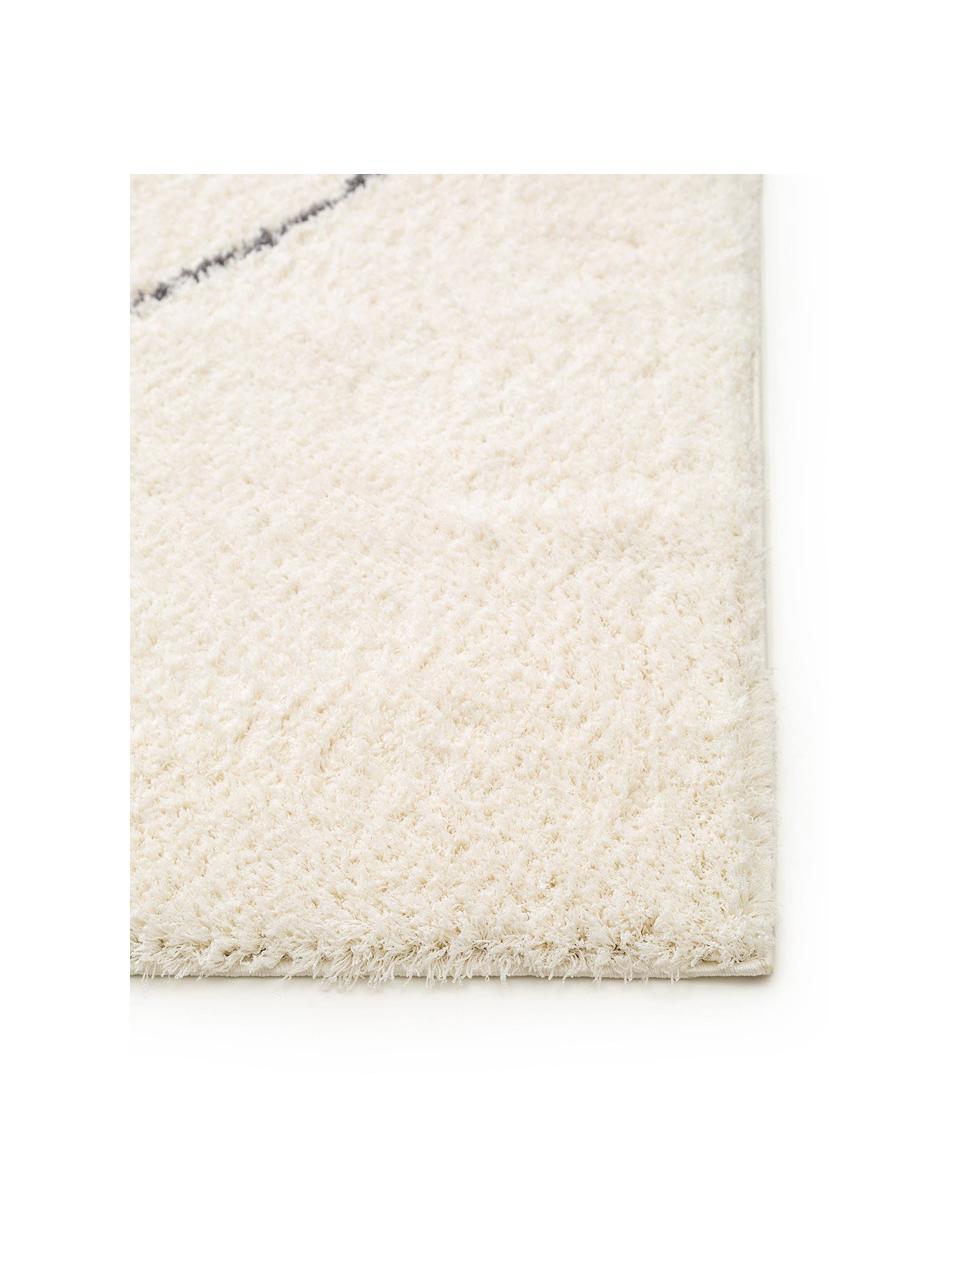 Hoogpolig vloerkleed Benno met ruitjesmotief, 100% polyester, Crèmekleurig, donkergrijs, B 200 x L 290 cm (maat L)